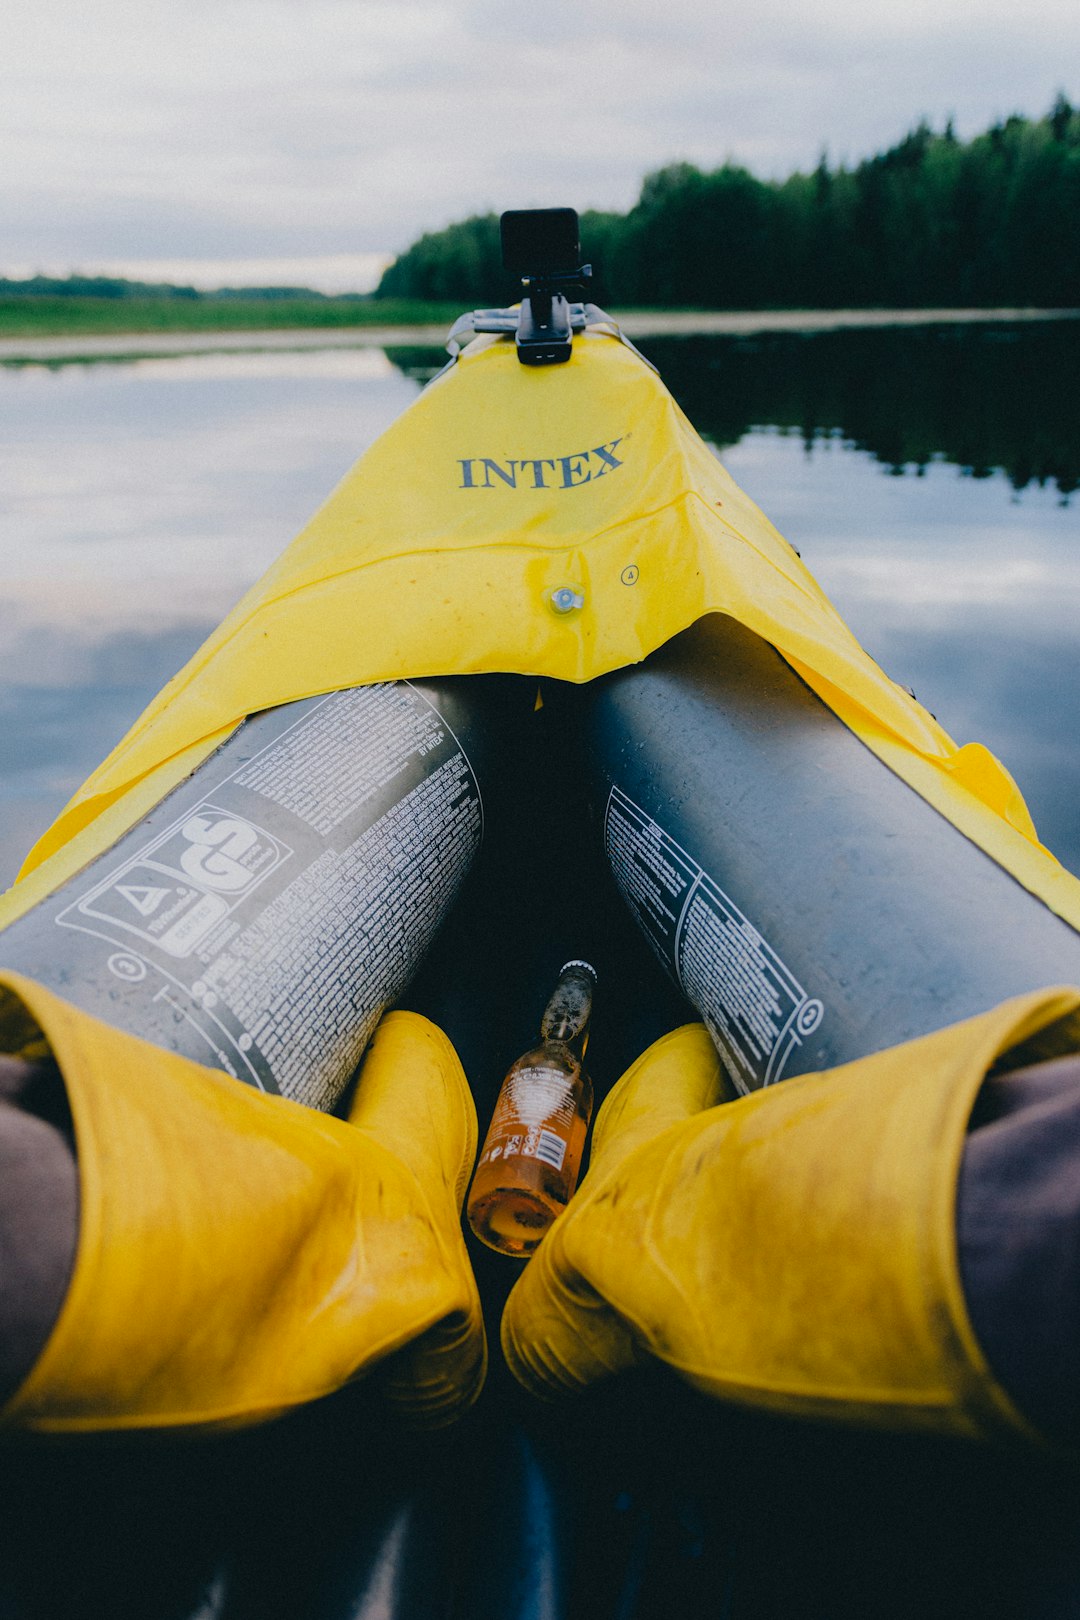 yellow kayak on body of water during daytime